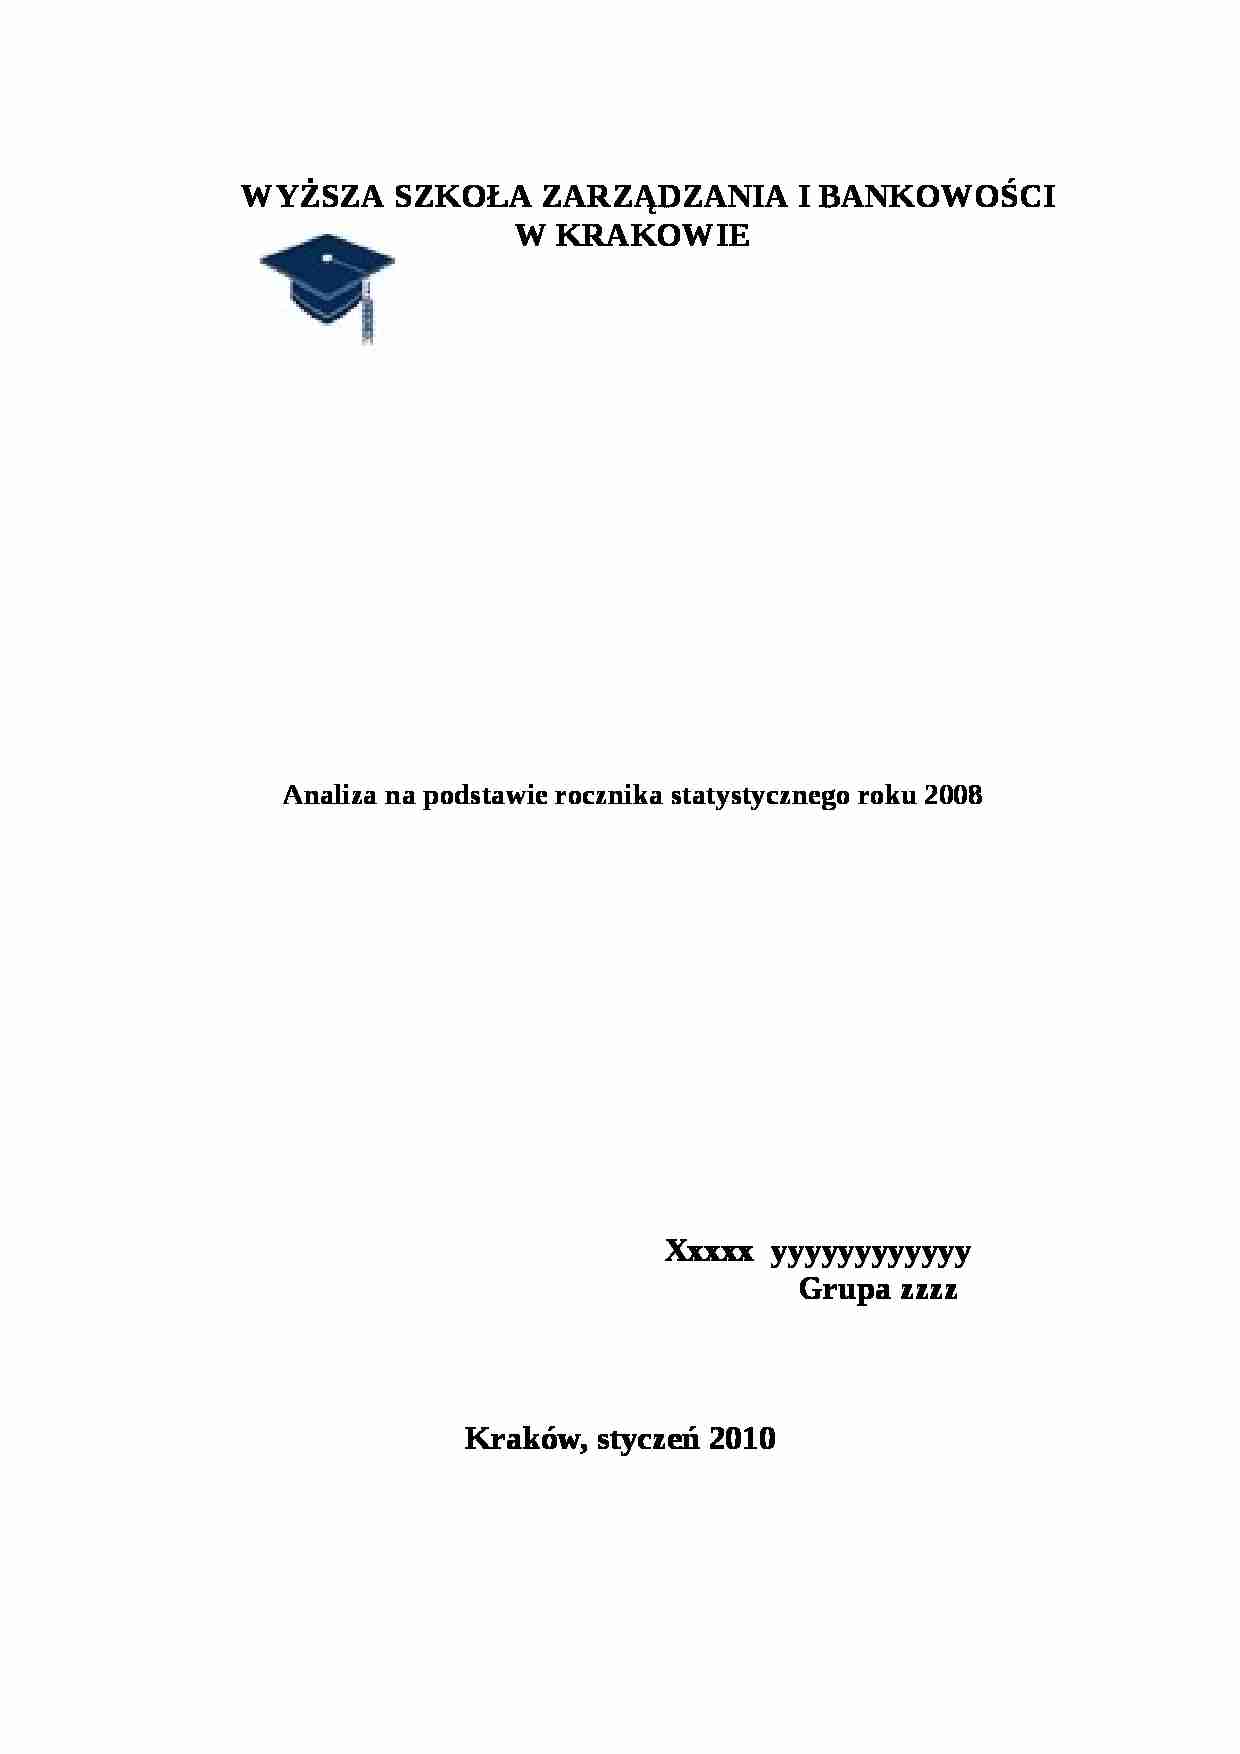 statystyka praca zaliczeniowa u prof Roszczynialskiego - strona 1